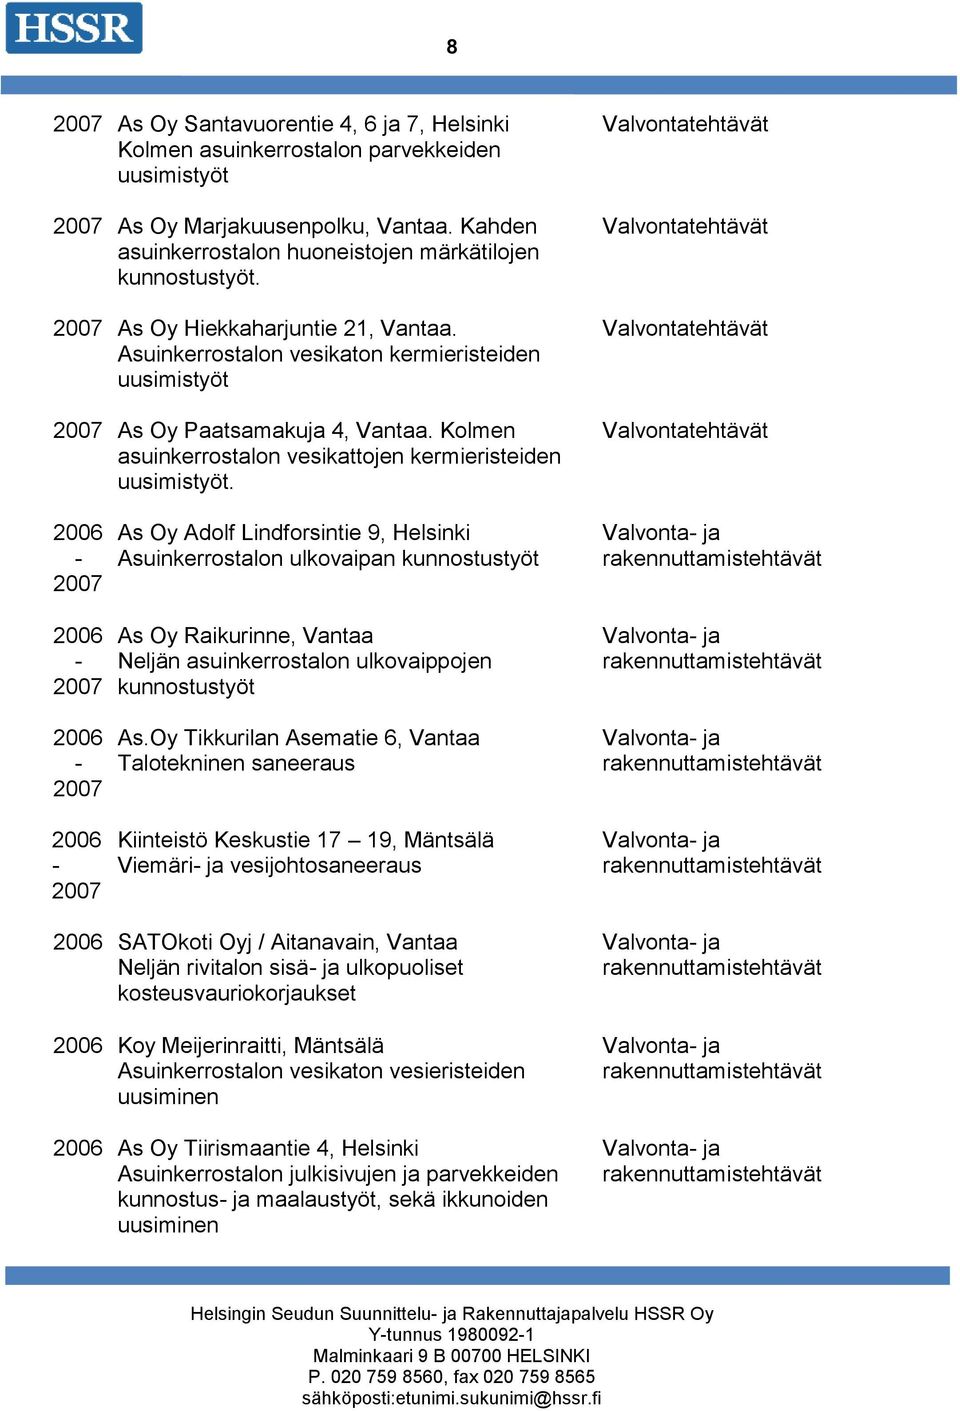 2006 2007 2006 2007 2006 2007 As Oy Adolf Lindforsintie 9, Helsinki Asuinkerrostalon ulkovaipan As Oy Raikurinne, Vantaa Neljän asuinkerrostalon ulkovaippojen As.